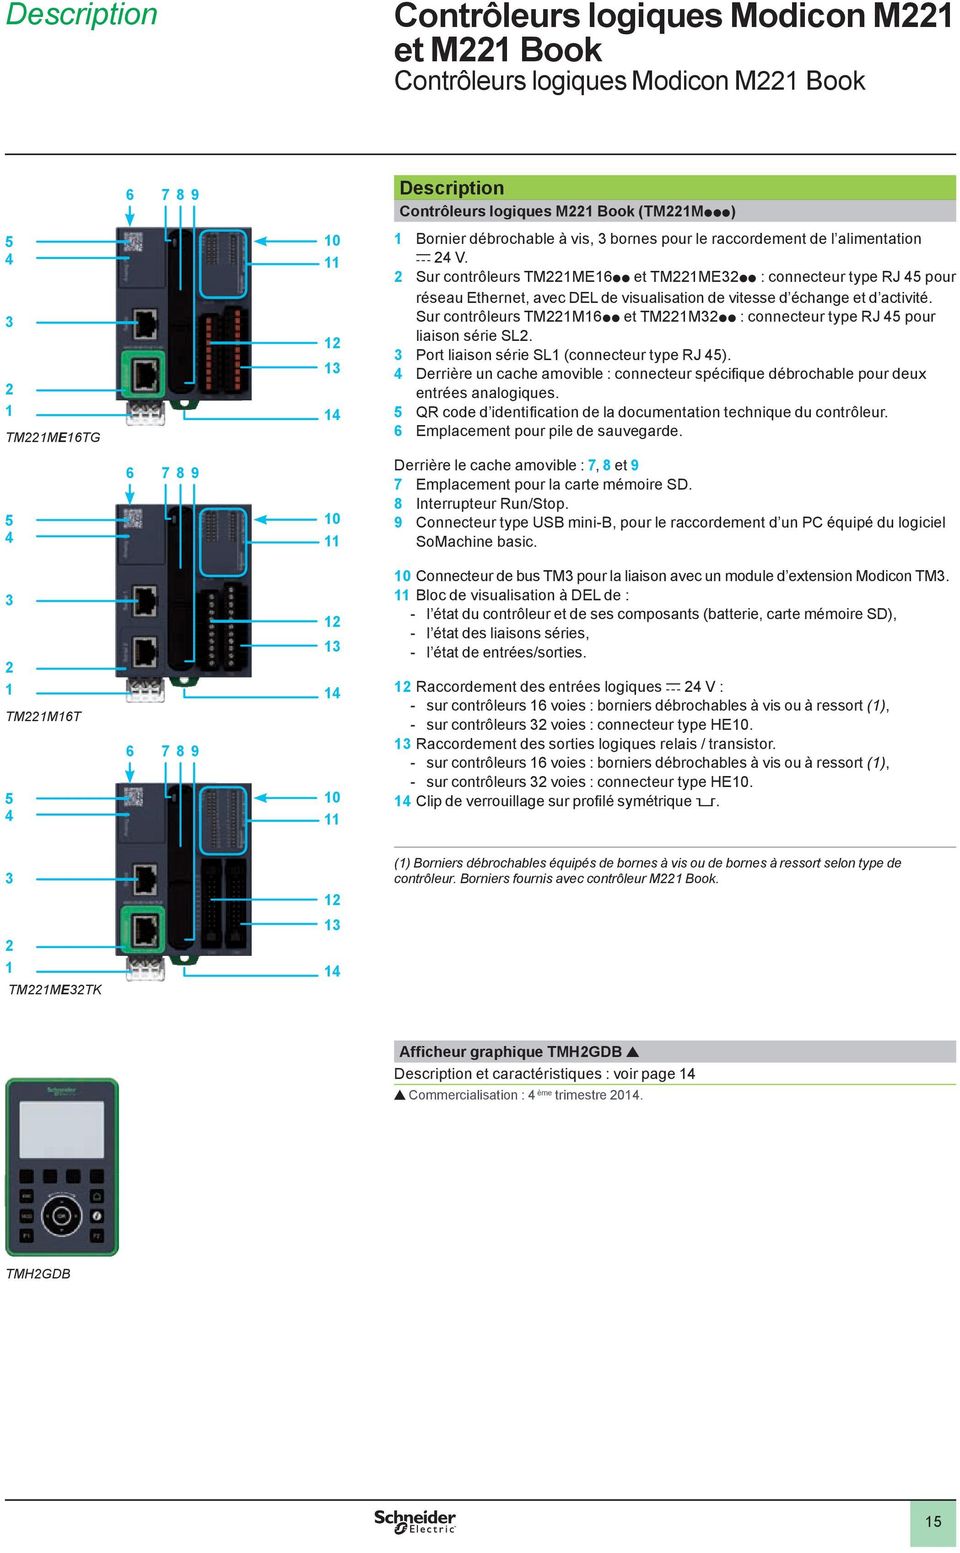 Sur contrôleurs TMMpp et TMMpp : connecteur type RJ pour liaison série SL. Port liaison série SL (connecteur type RJ ).